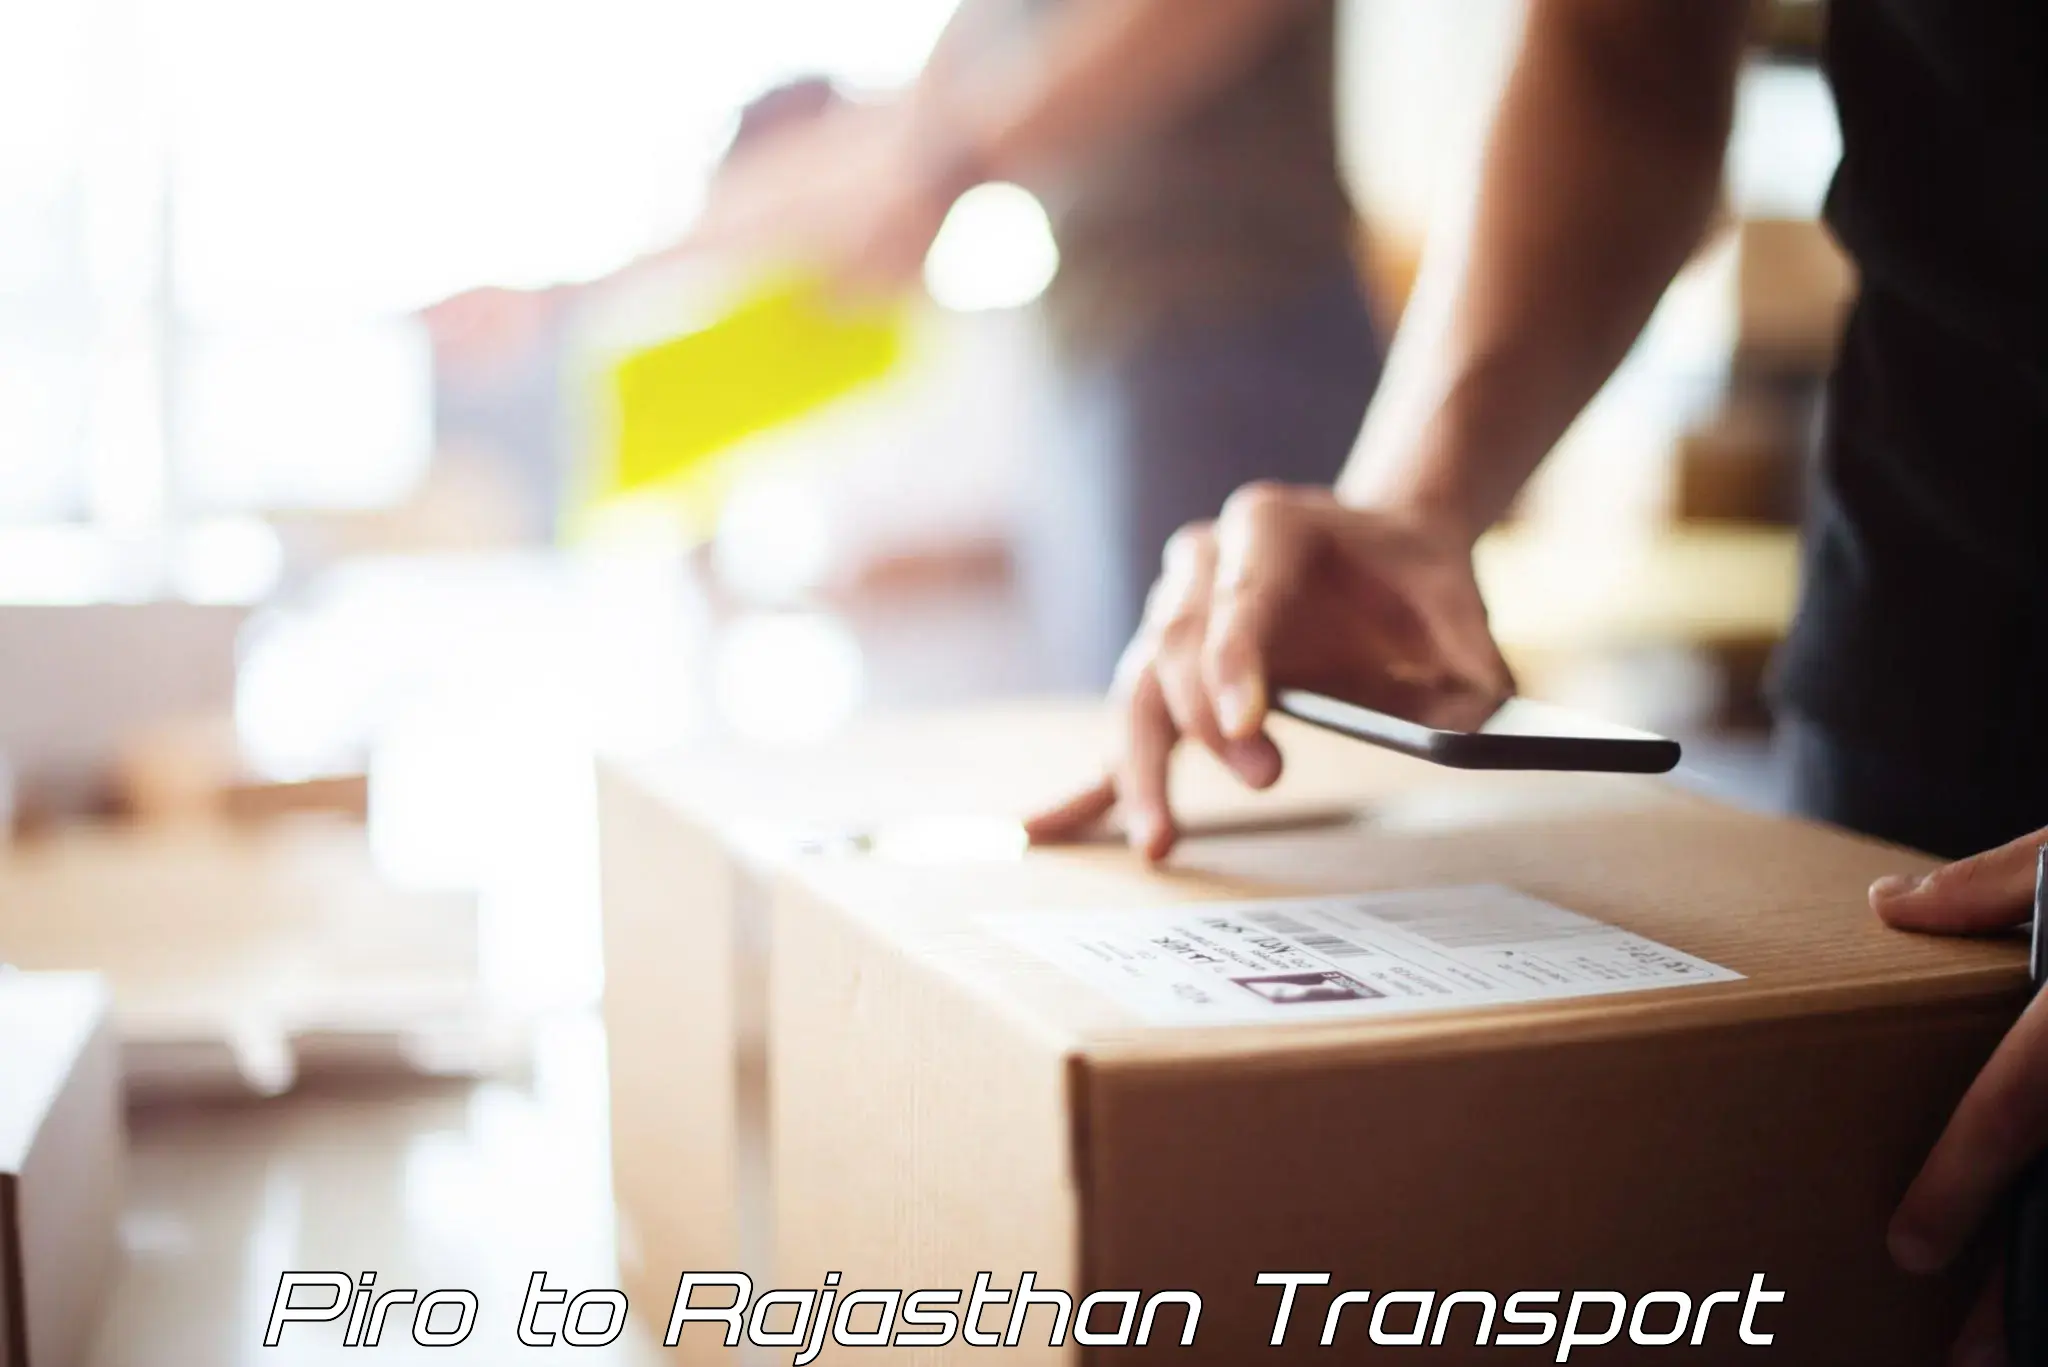 Furniture transport service Piro to Rajasthan